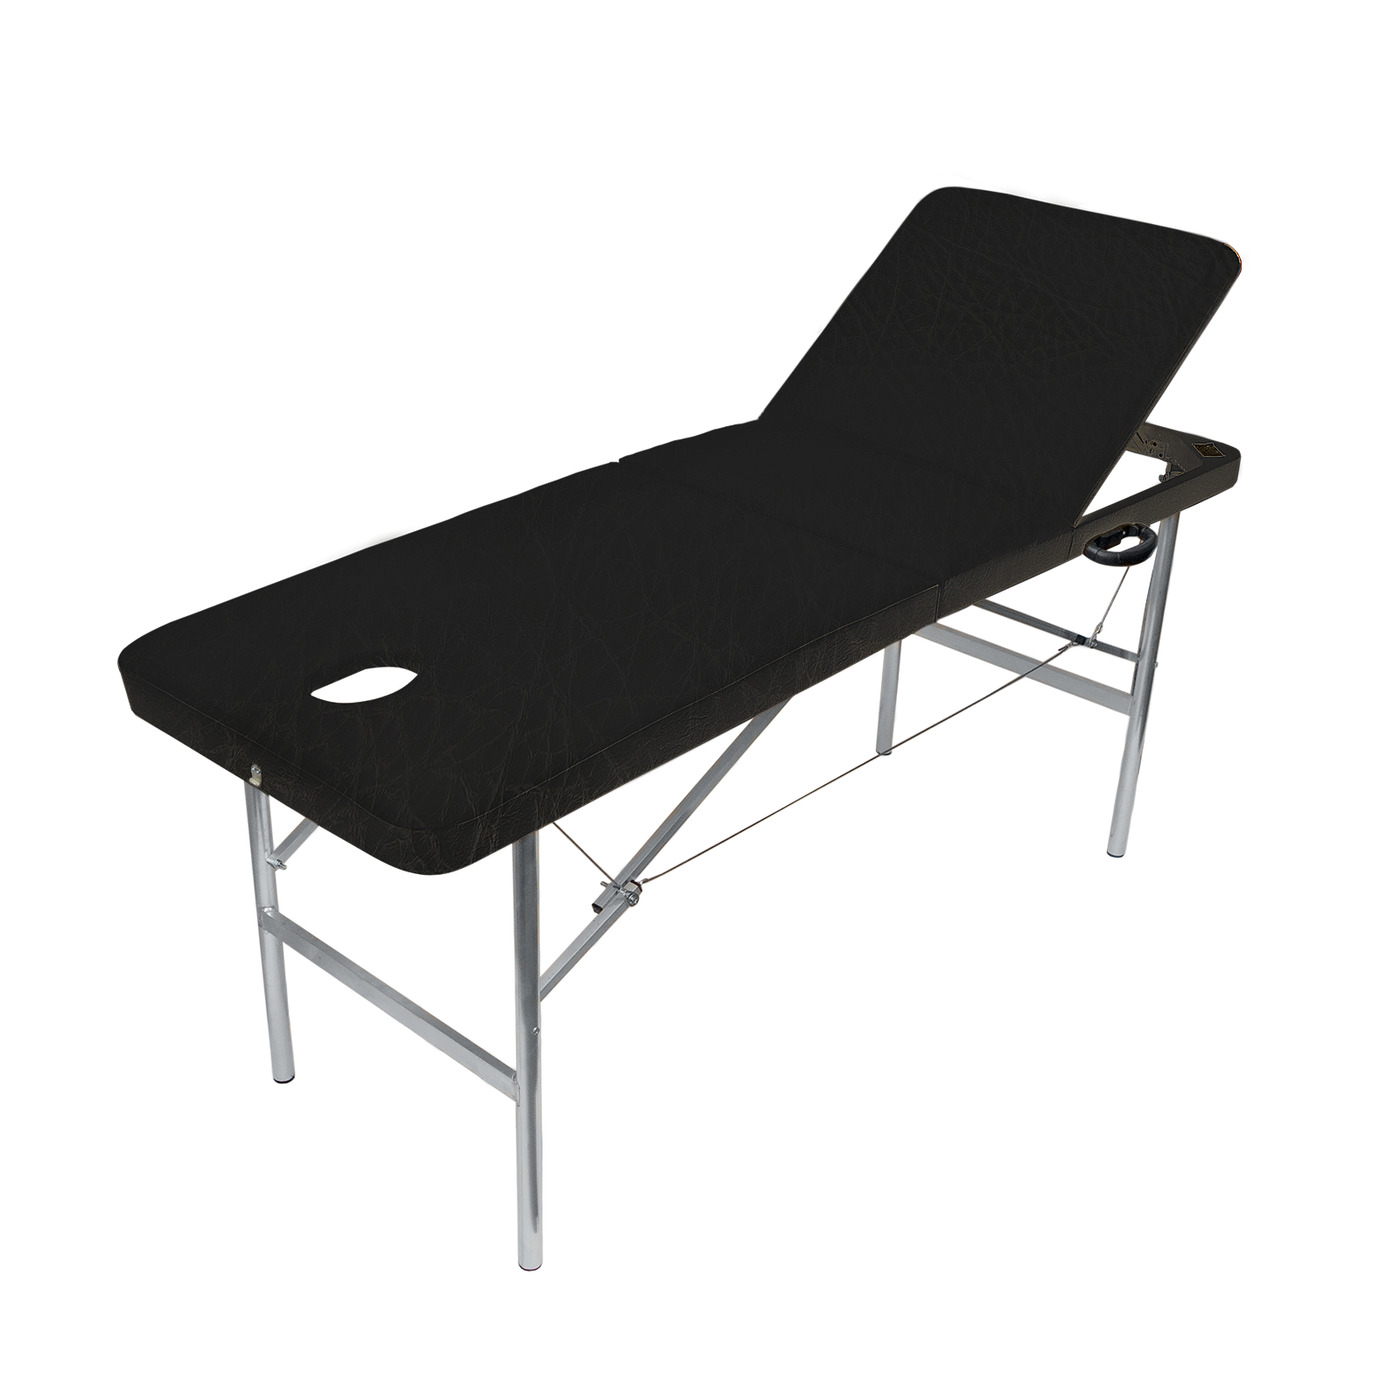 Массажный стол Your Stol трехзонный XL,складной, 190х70, черный